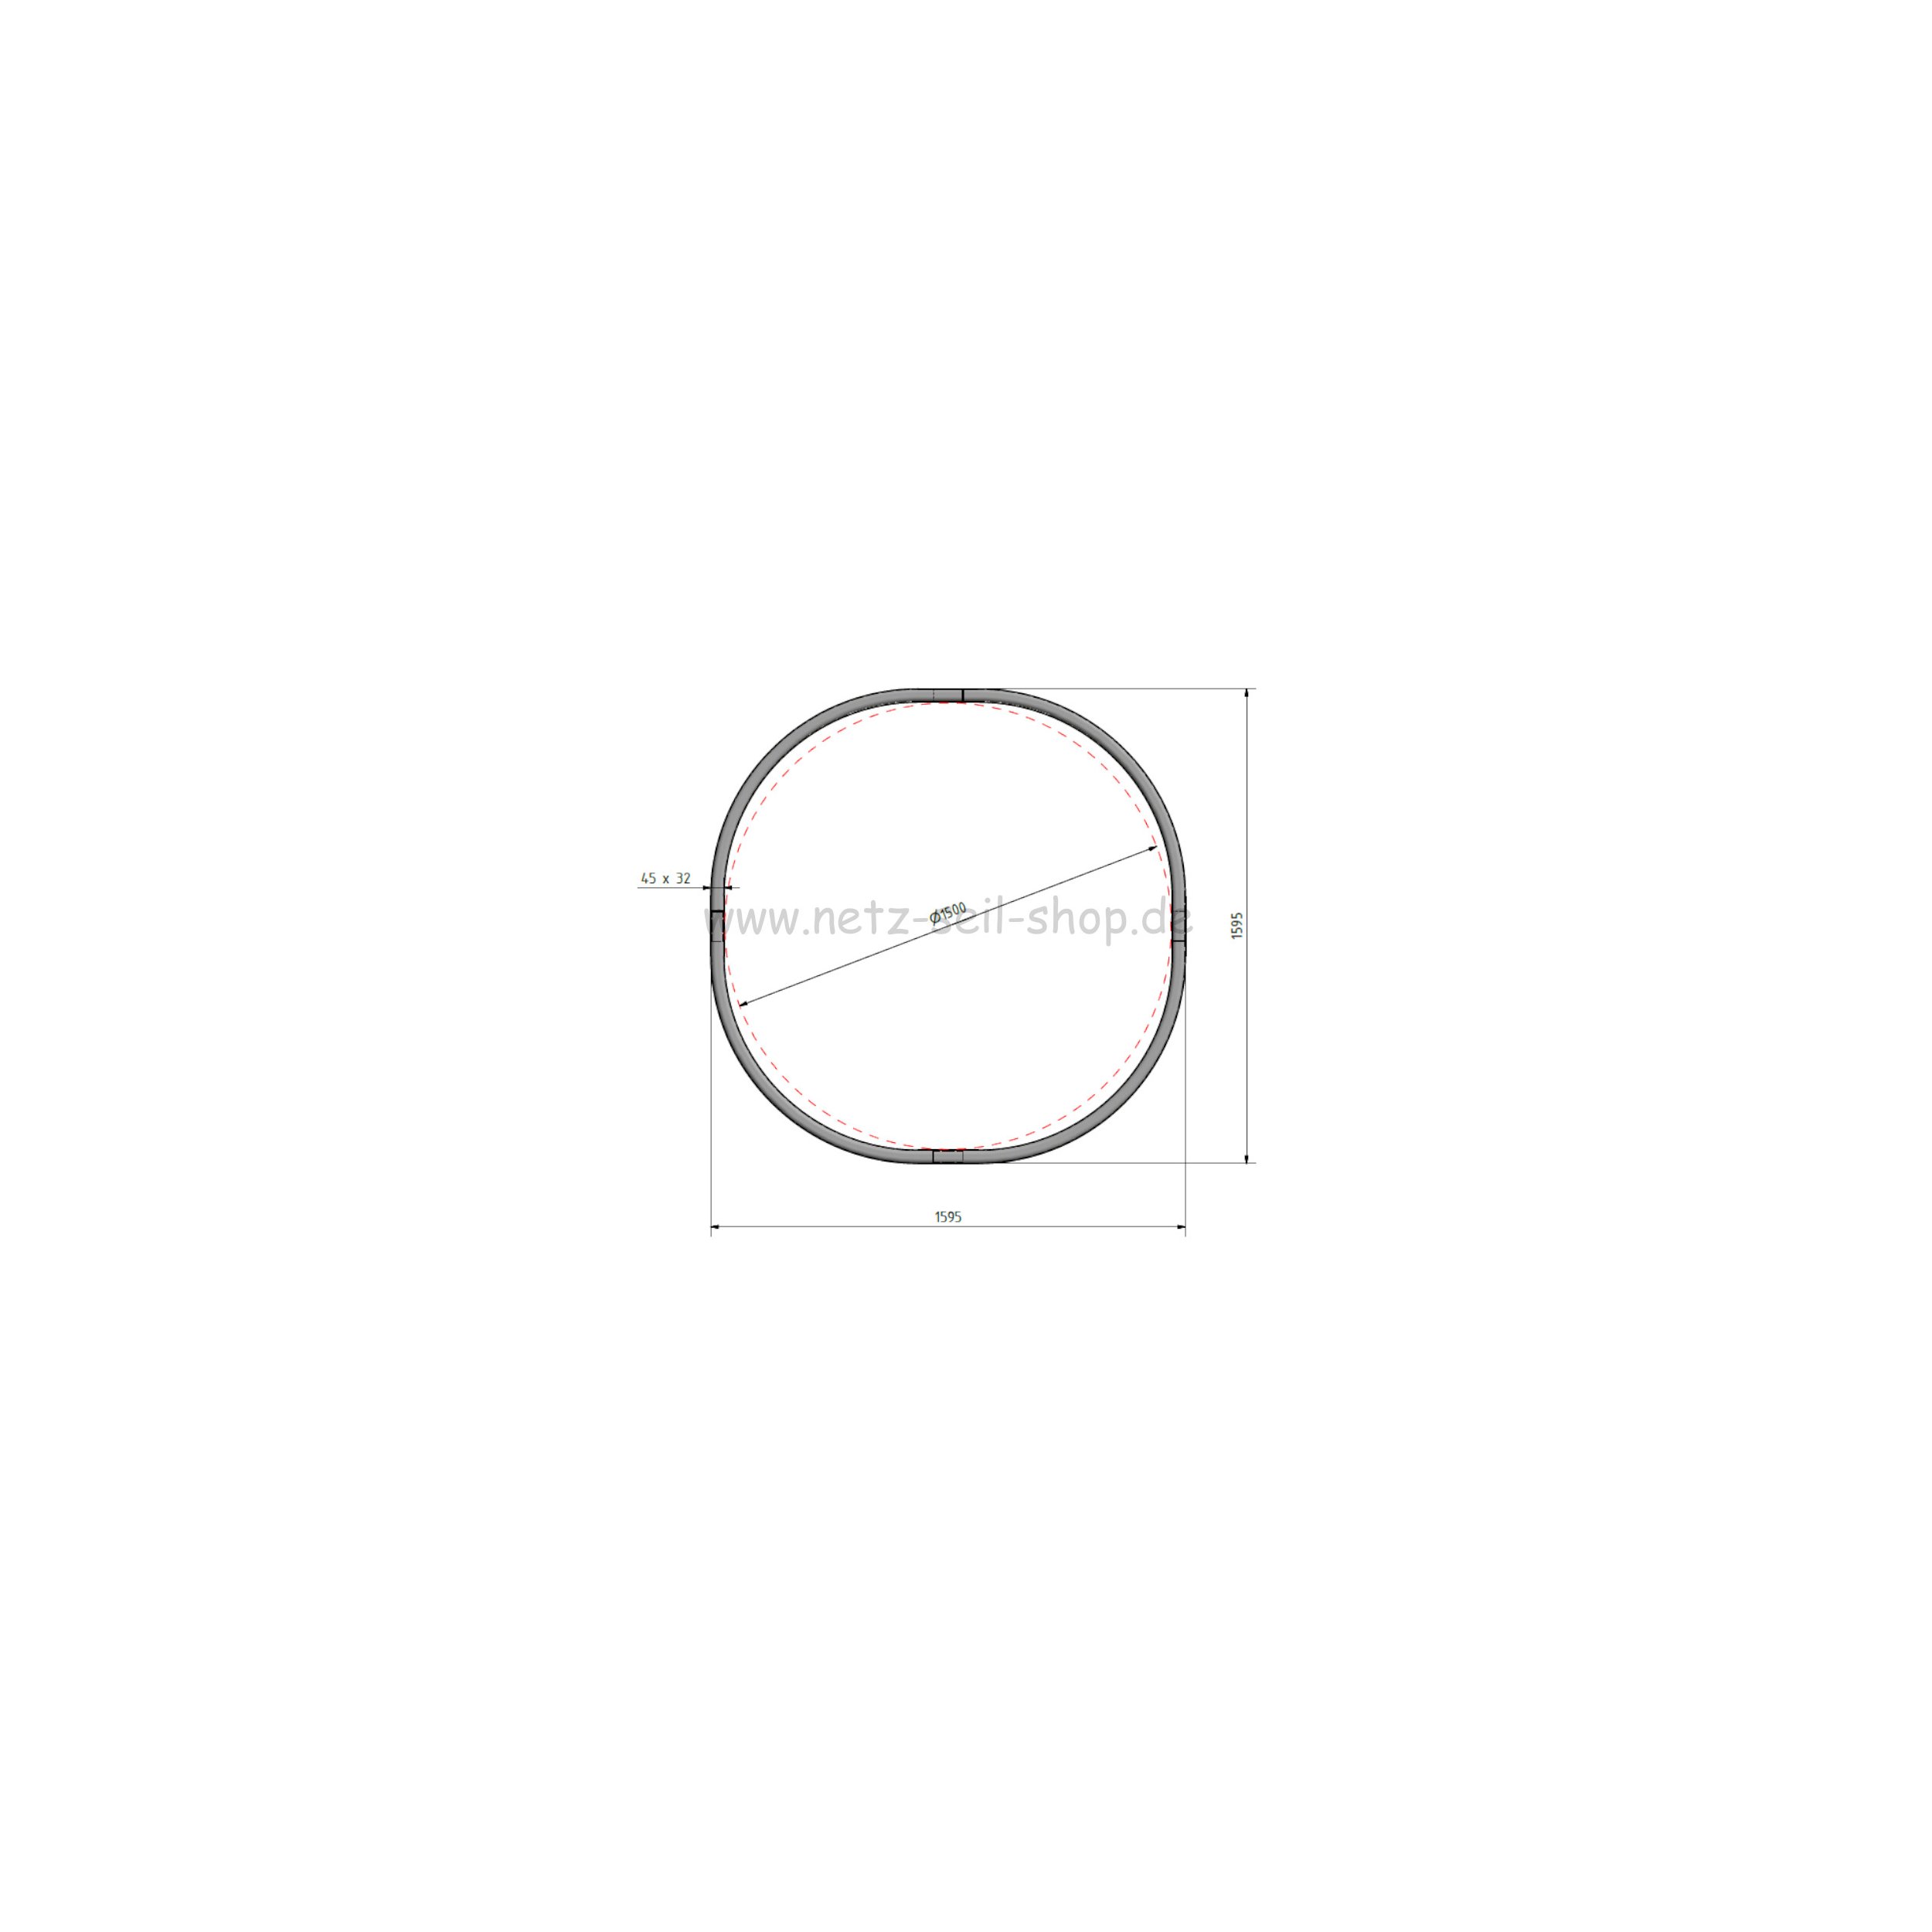 Heunetz für Rundballen, 170 cm Durchmesser, Höhe 120cm,  Ø 5 mm Garn, # 80 mm Maschenweite ohne Ring